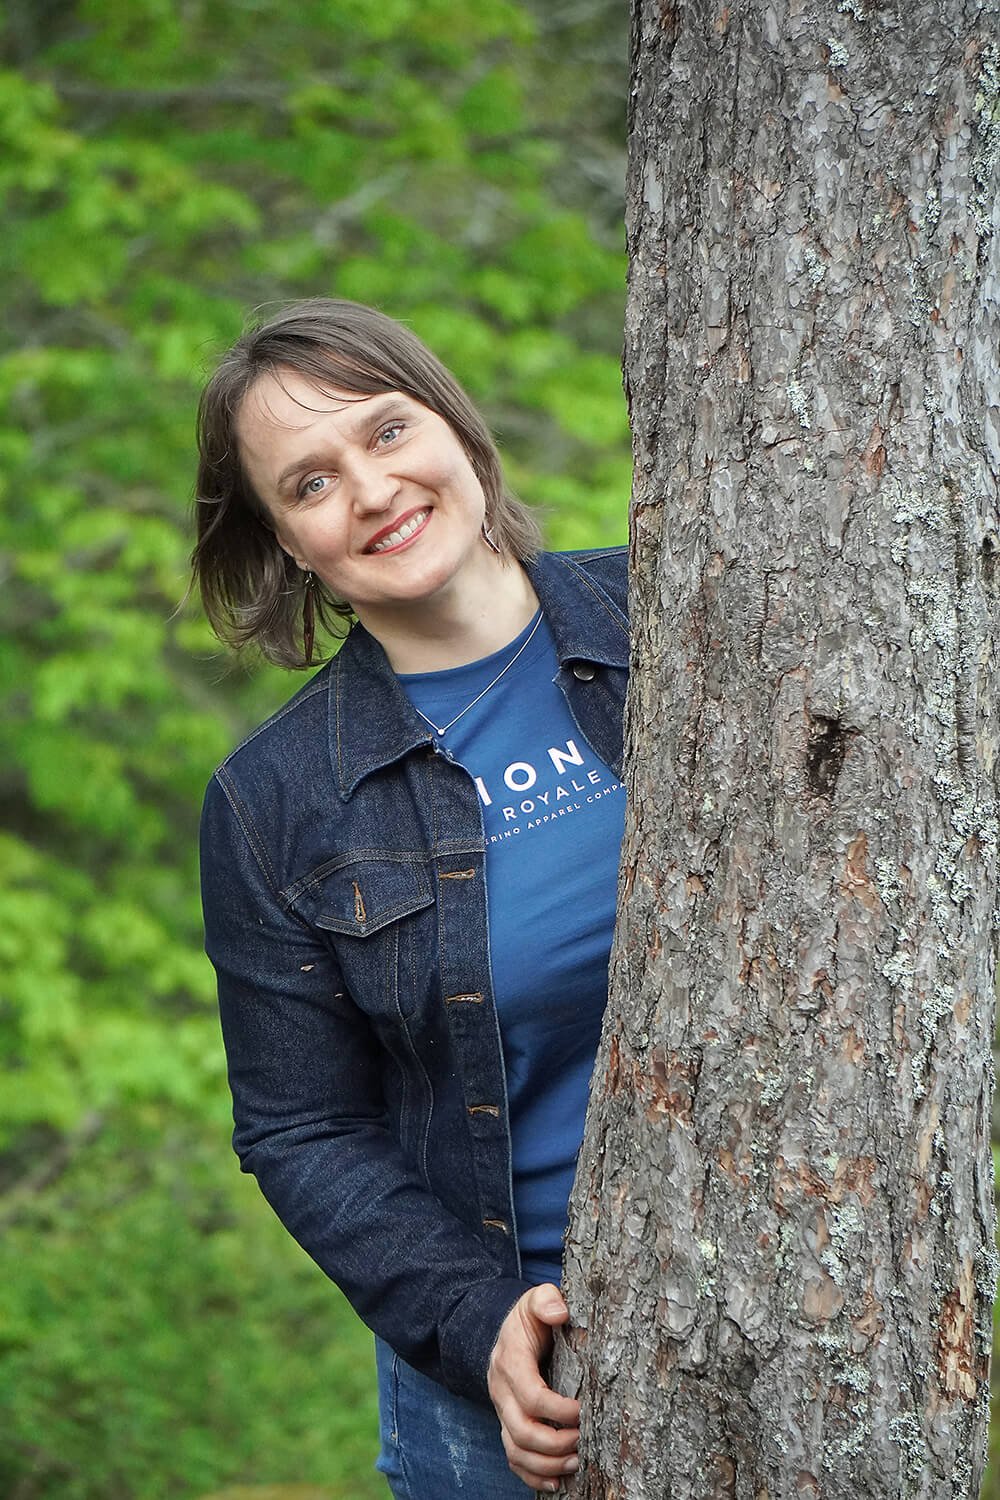 Metsäkylpyohjaaja Kaisu Maijala on luontohyvinvoinnin asiantuntija